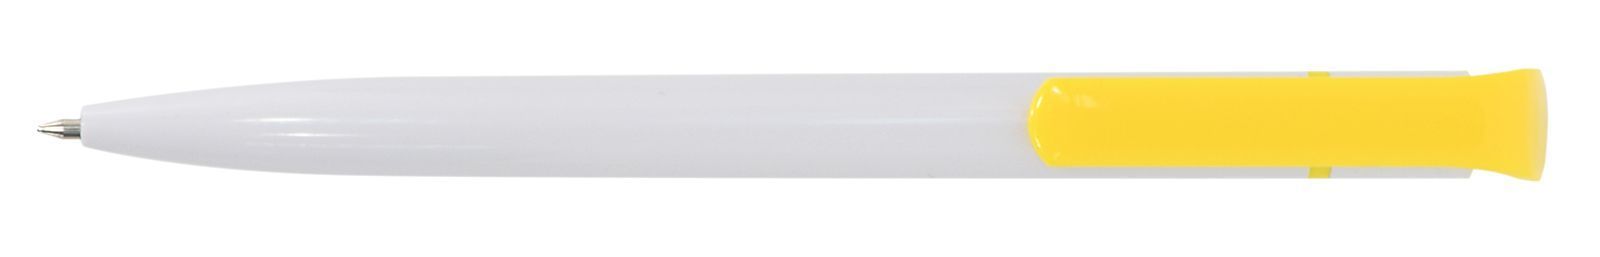 Ручка для логотипа шариковая автоматическая INFORMAT НИКА 0,7 мм, синяя, бело-желтый корпус оптом